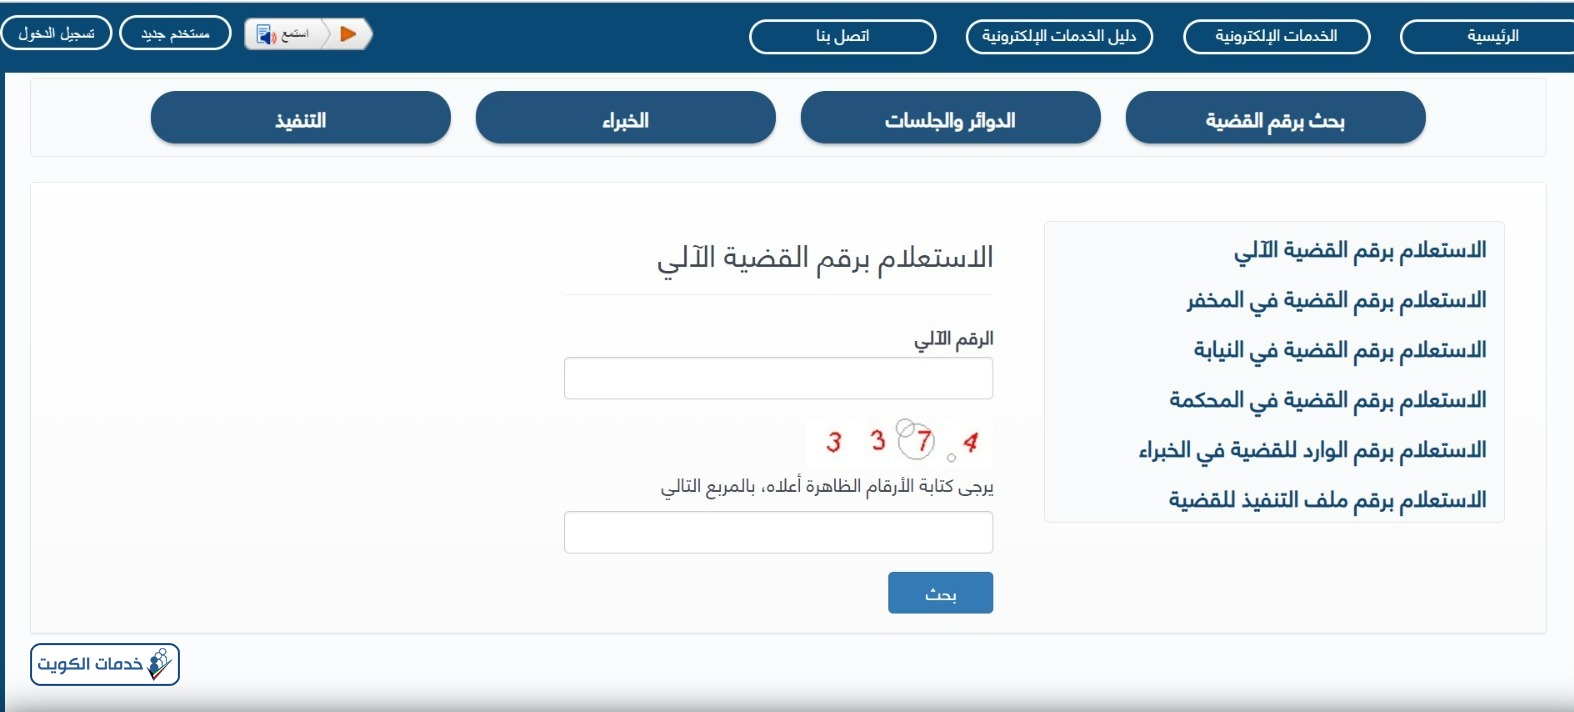 خطوات الاستعلام القضائي وزارة العدل الكويت